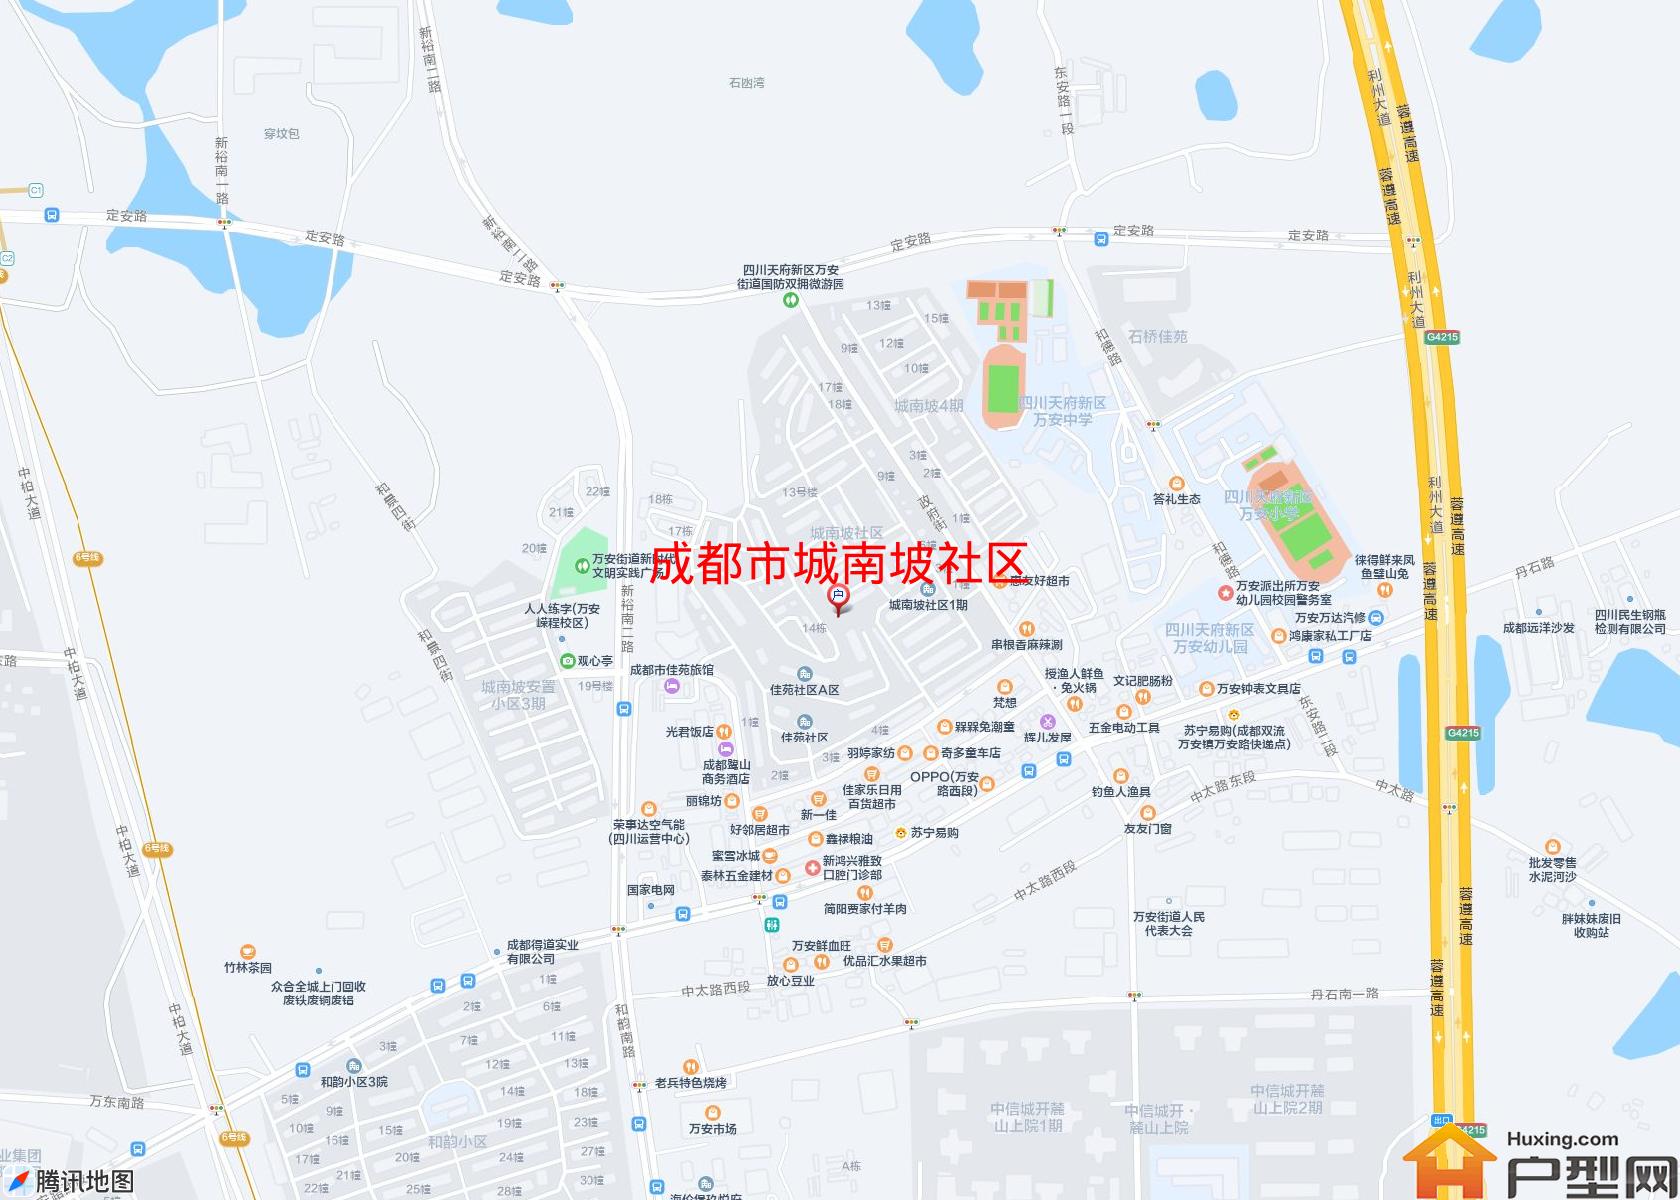 城南坡社区小区 - 户型网